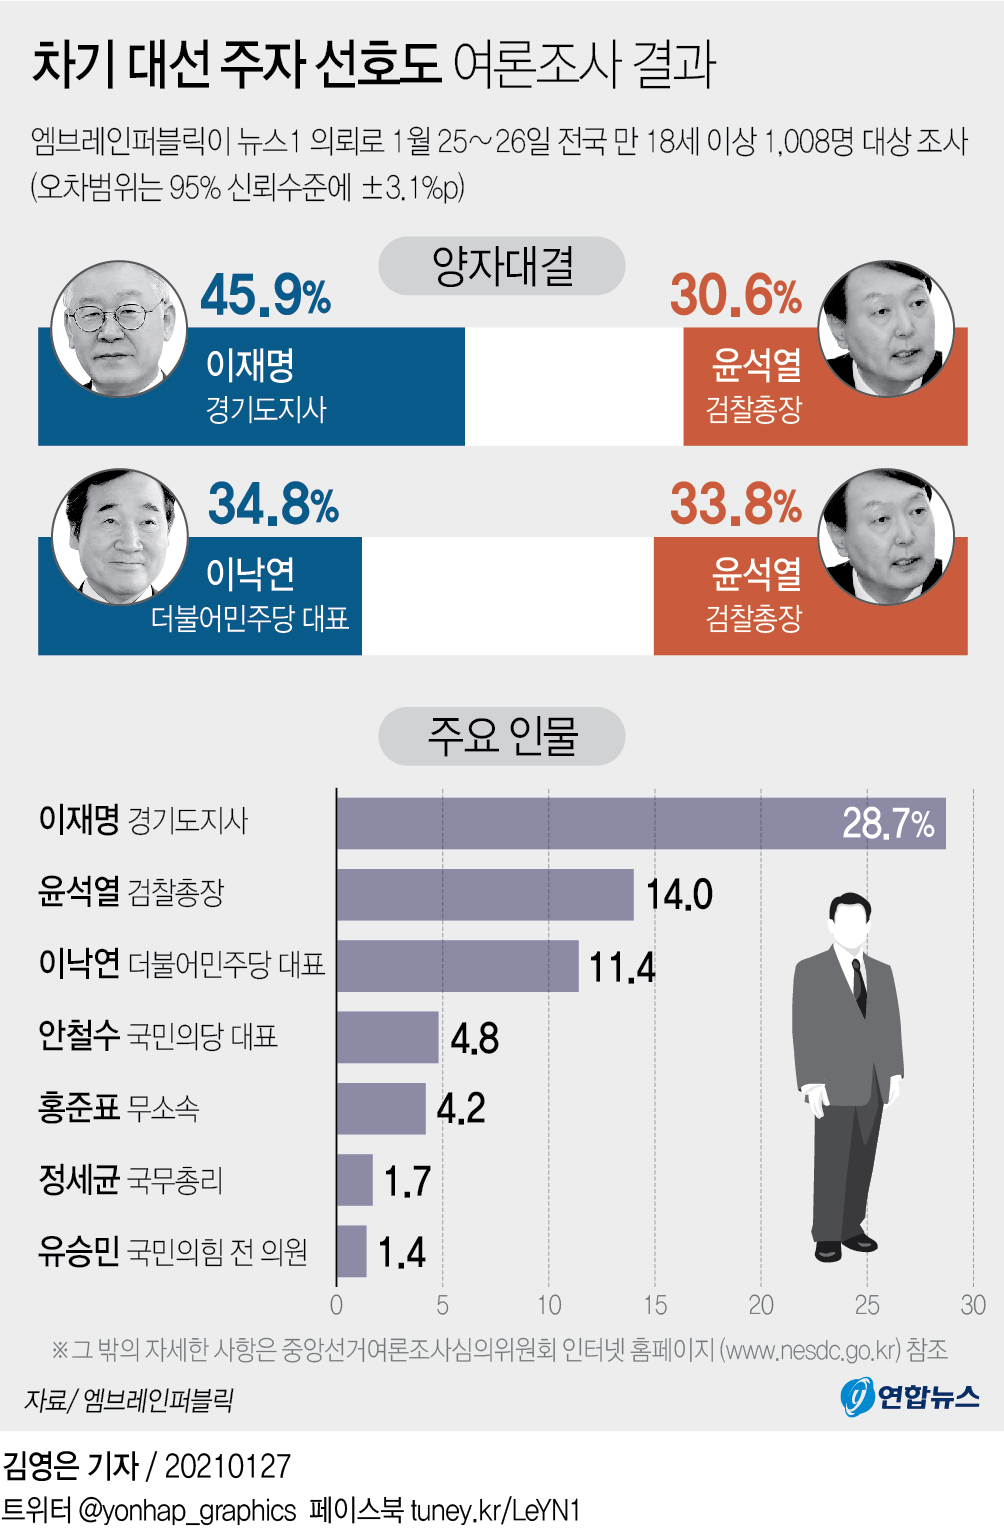 [그래픽] 차기 대선 주자 선호도 여론조사 결과